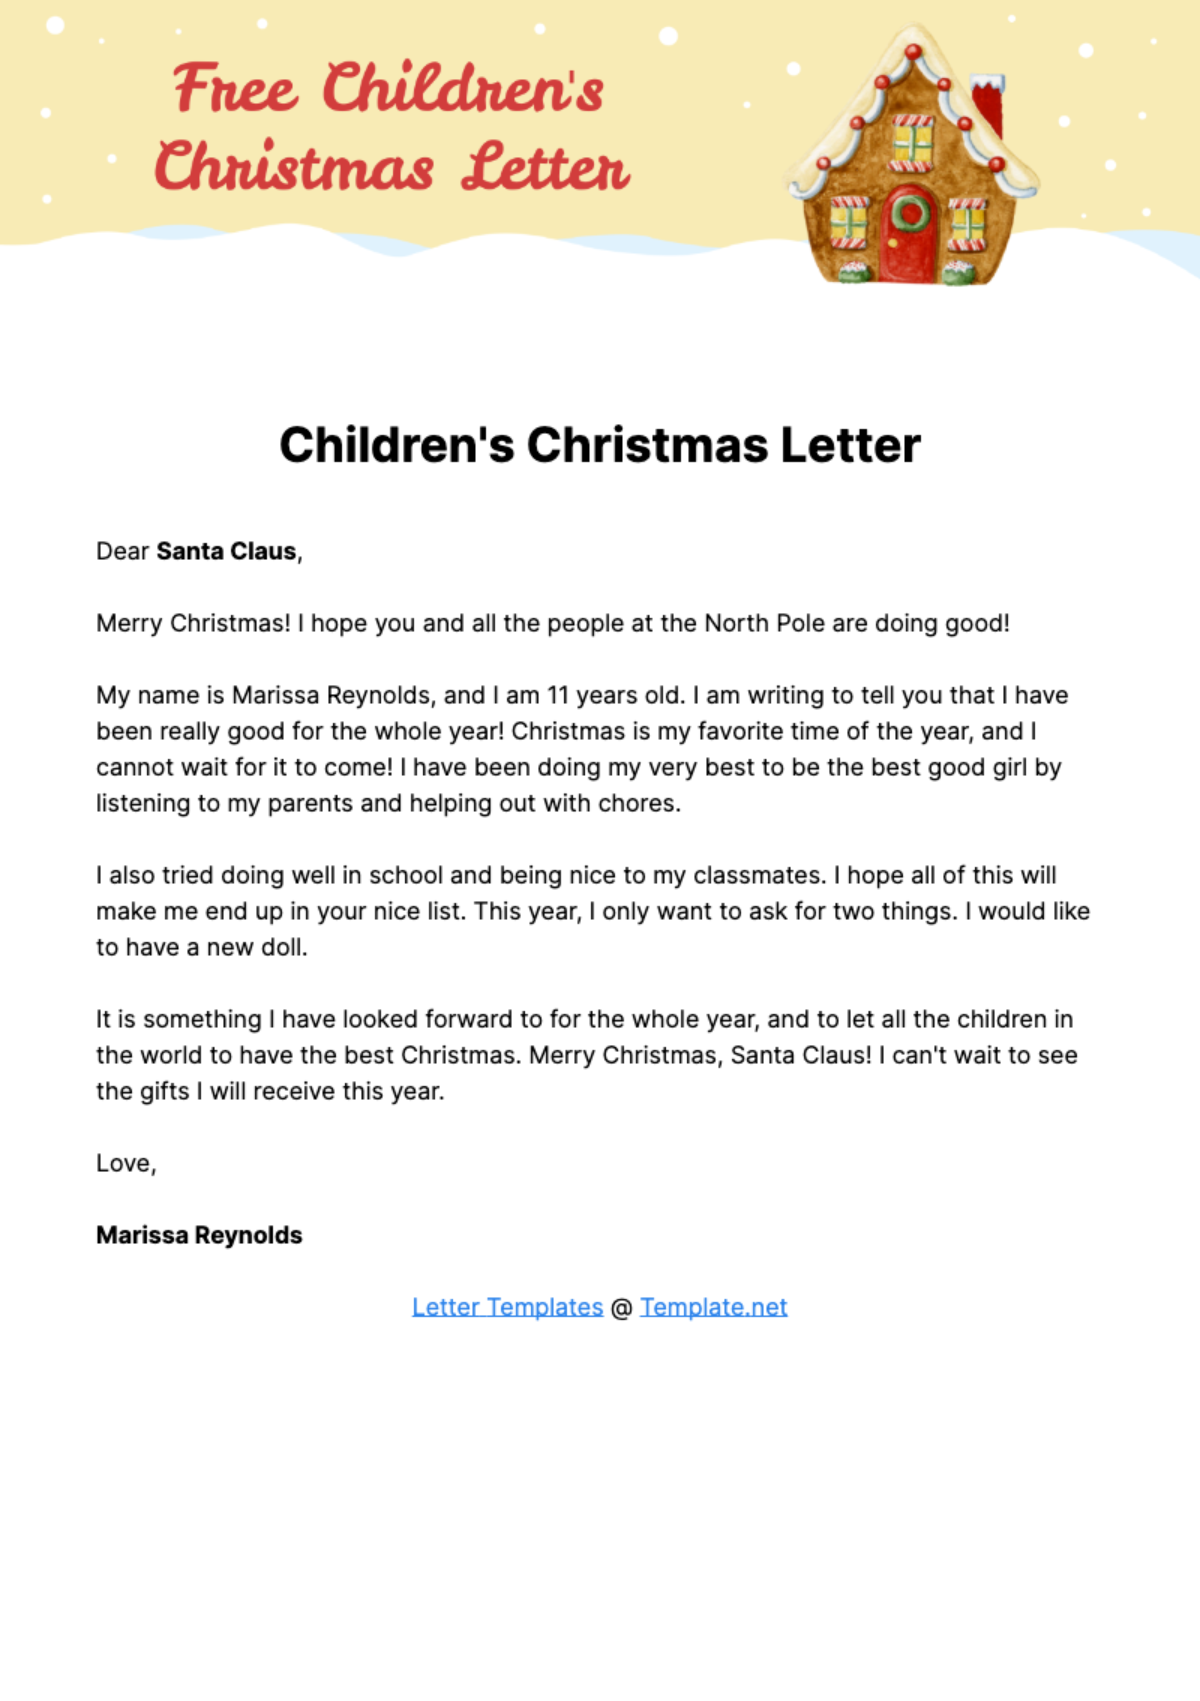 Children's Christmas Letter Template